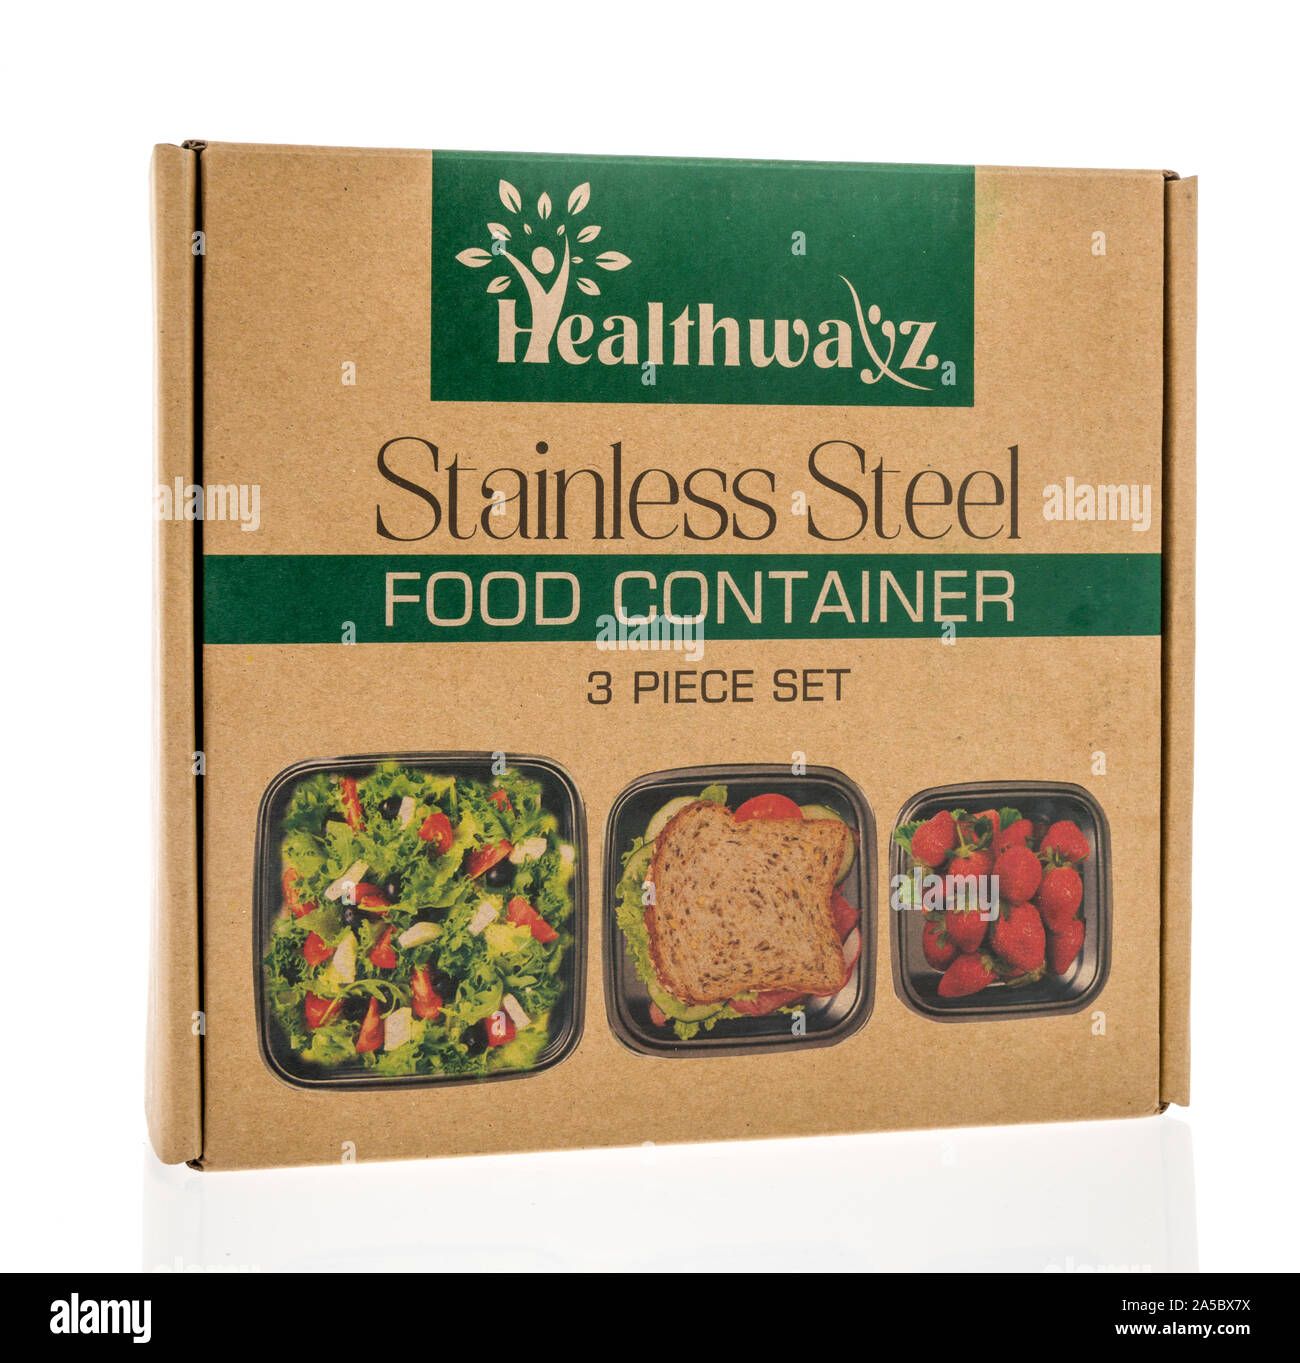 Winneconne, WI - 10. September 2019: ein Paket von Healthwayz Edelstahl food Container auf einem isolierten Hintergrund. Stockfoto